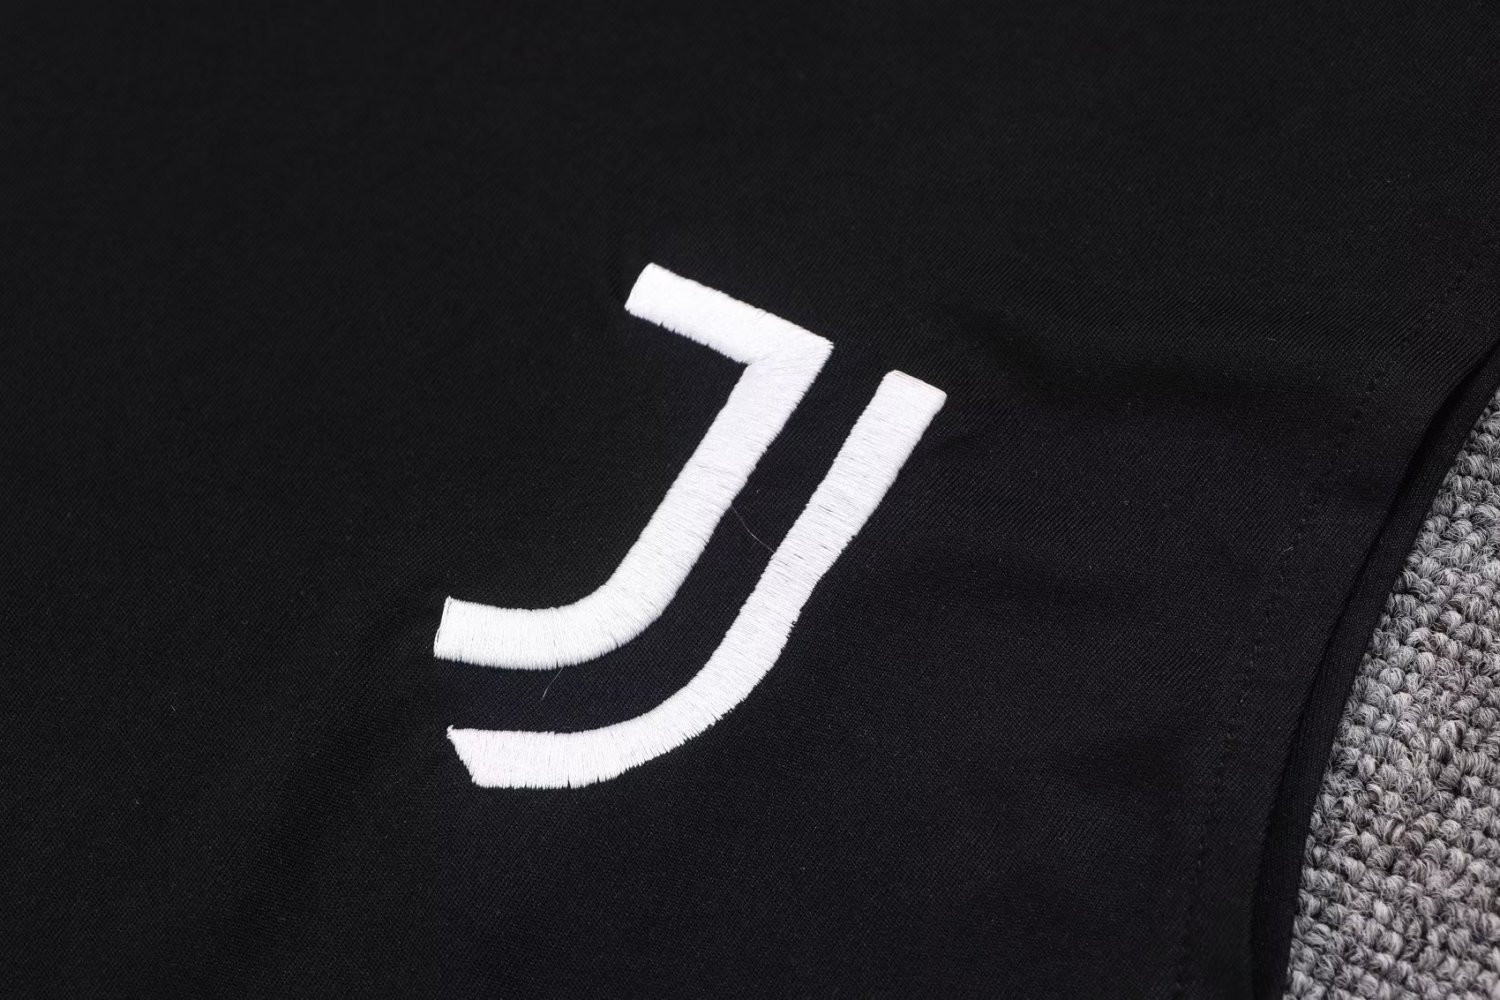 Juventus Soccer Singlet + Short Replica Black 2022/23 Mens